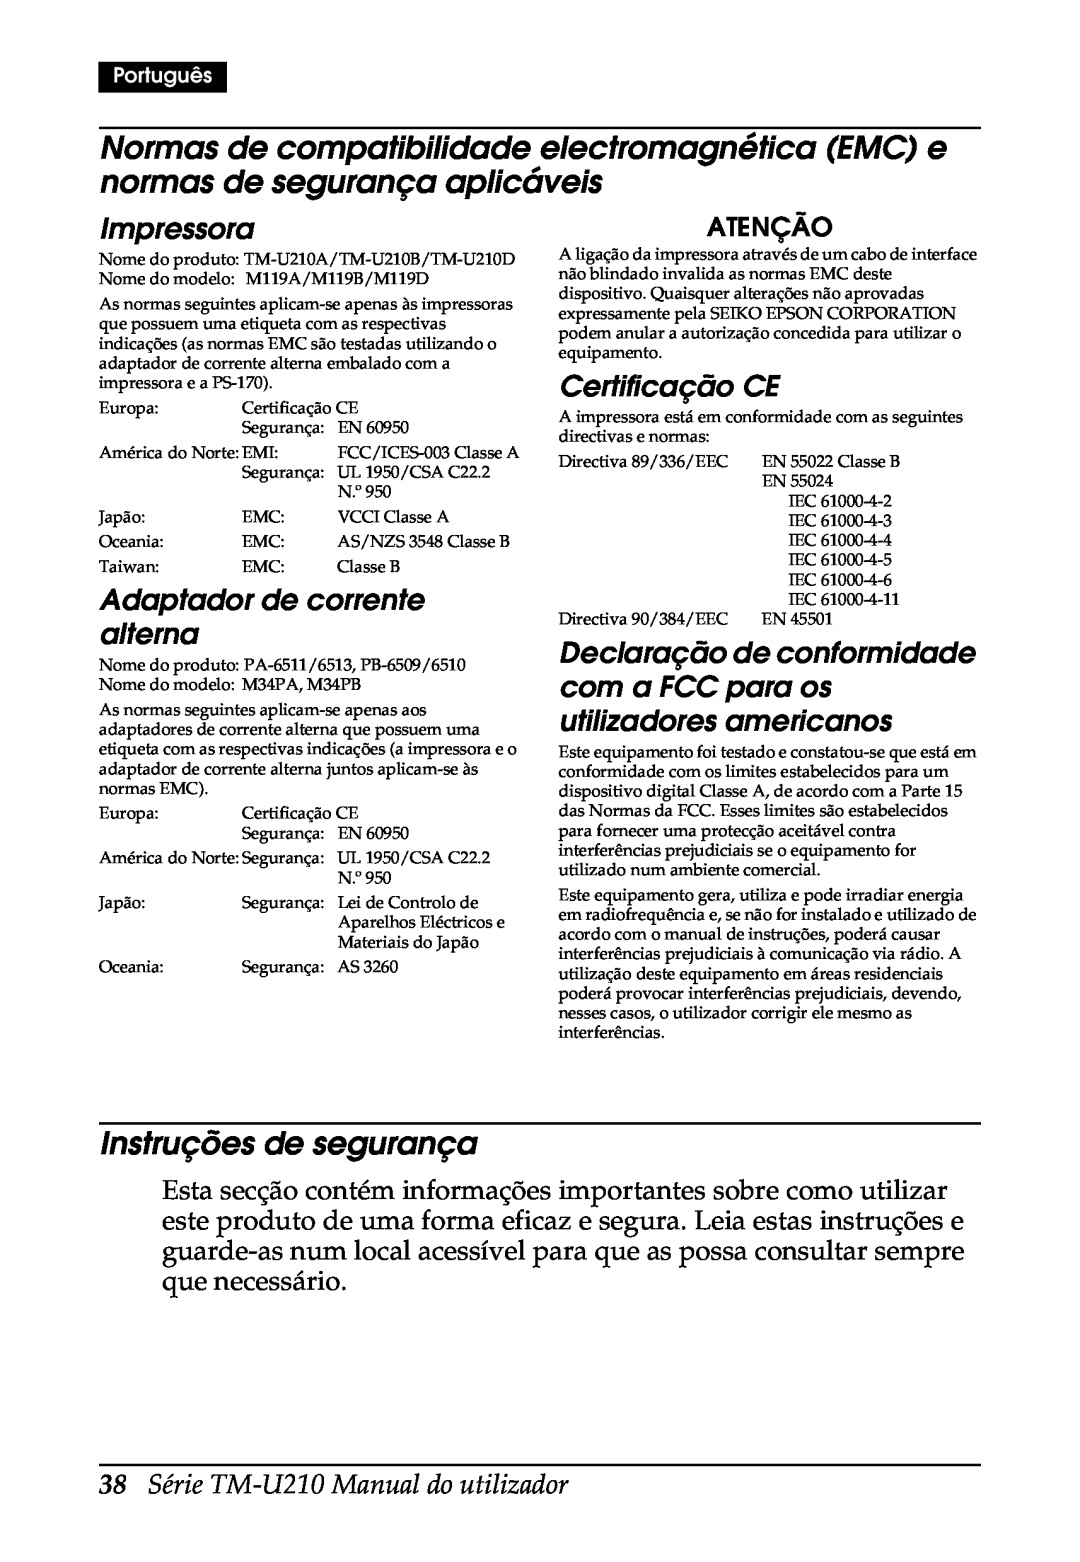 Epson M119B, M119D Instruções de segurança, Impressora, Adaptador de corrente alterna, Certificação CE, Atenção, Português 